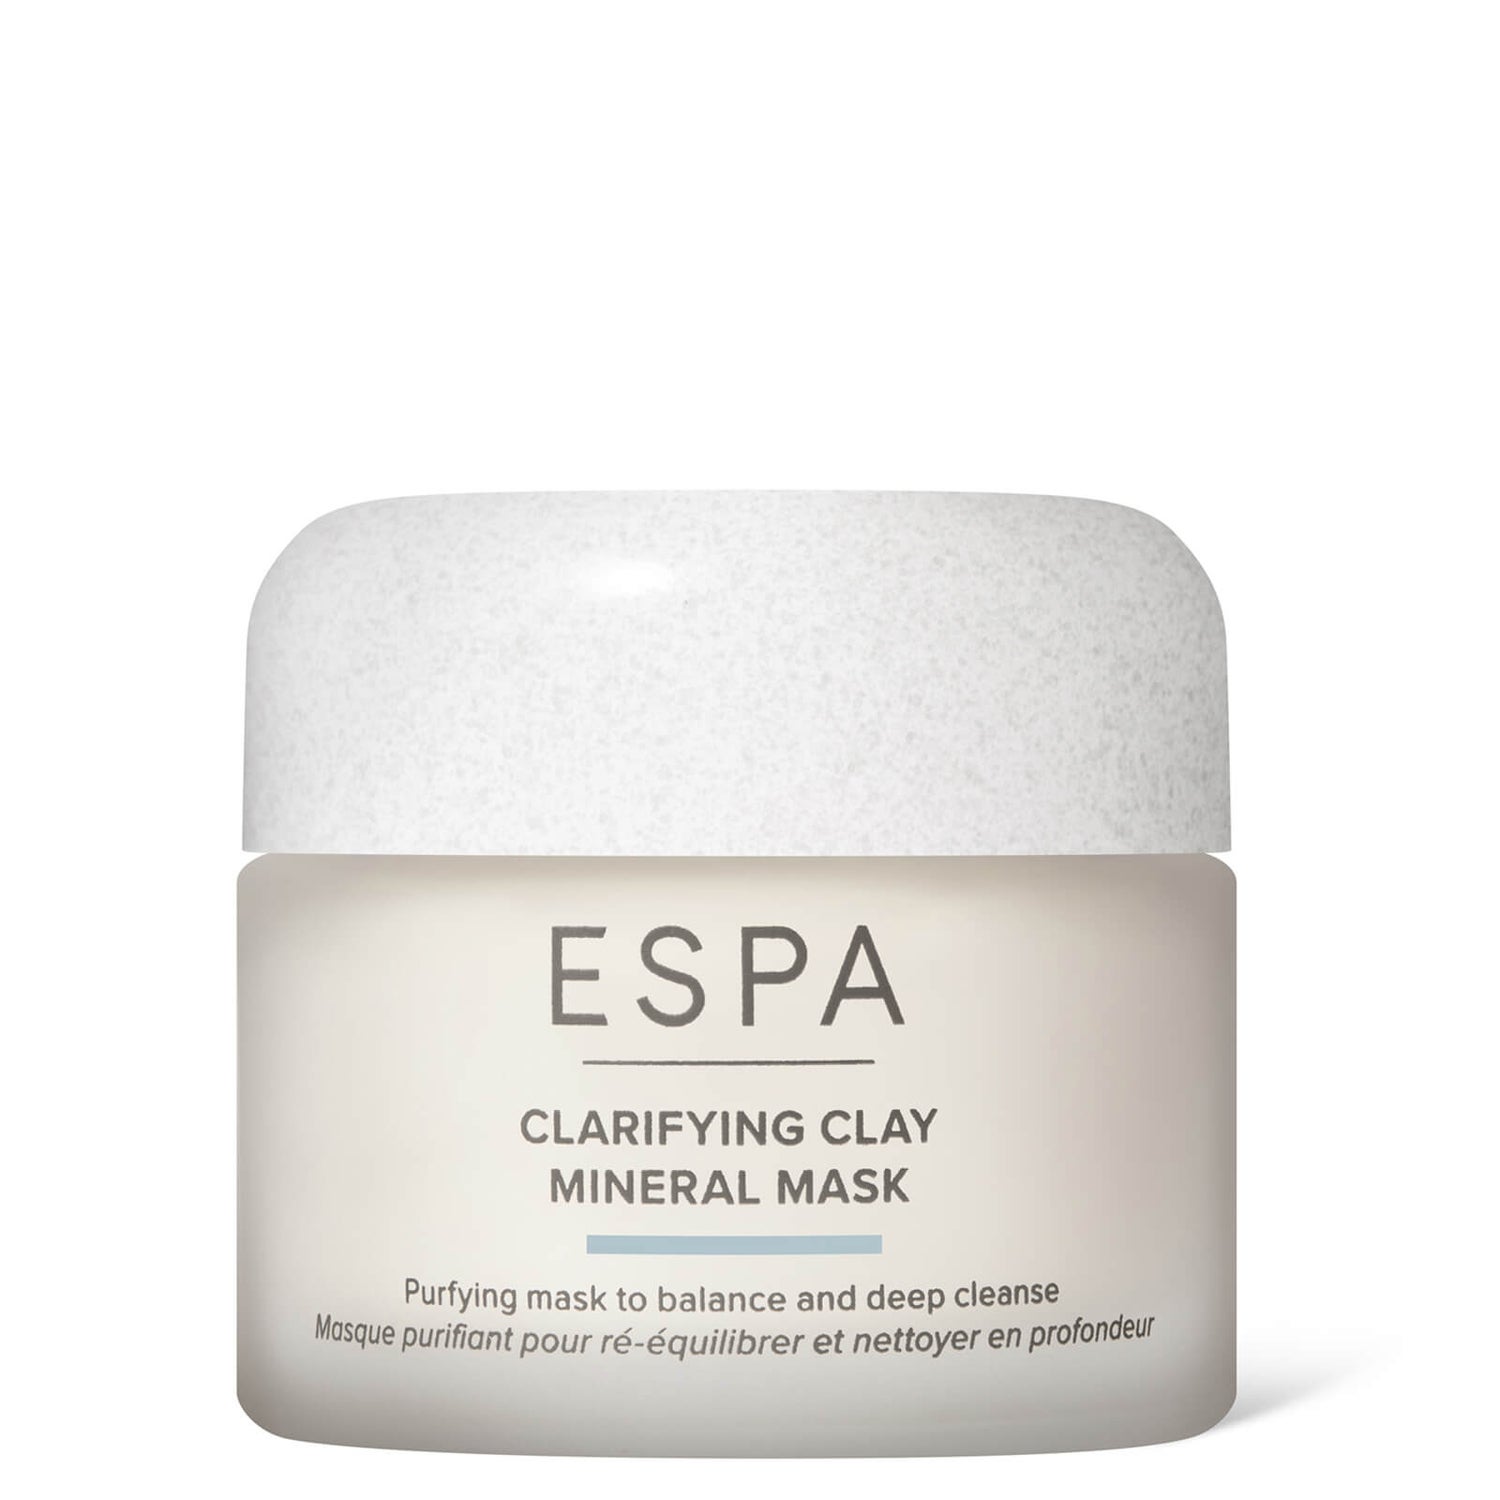 ESPA Clarifying Clay Mineral Mask 1.8 fl. oz.